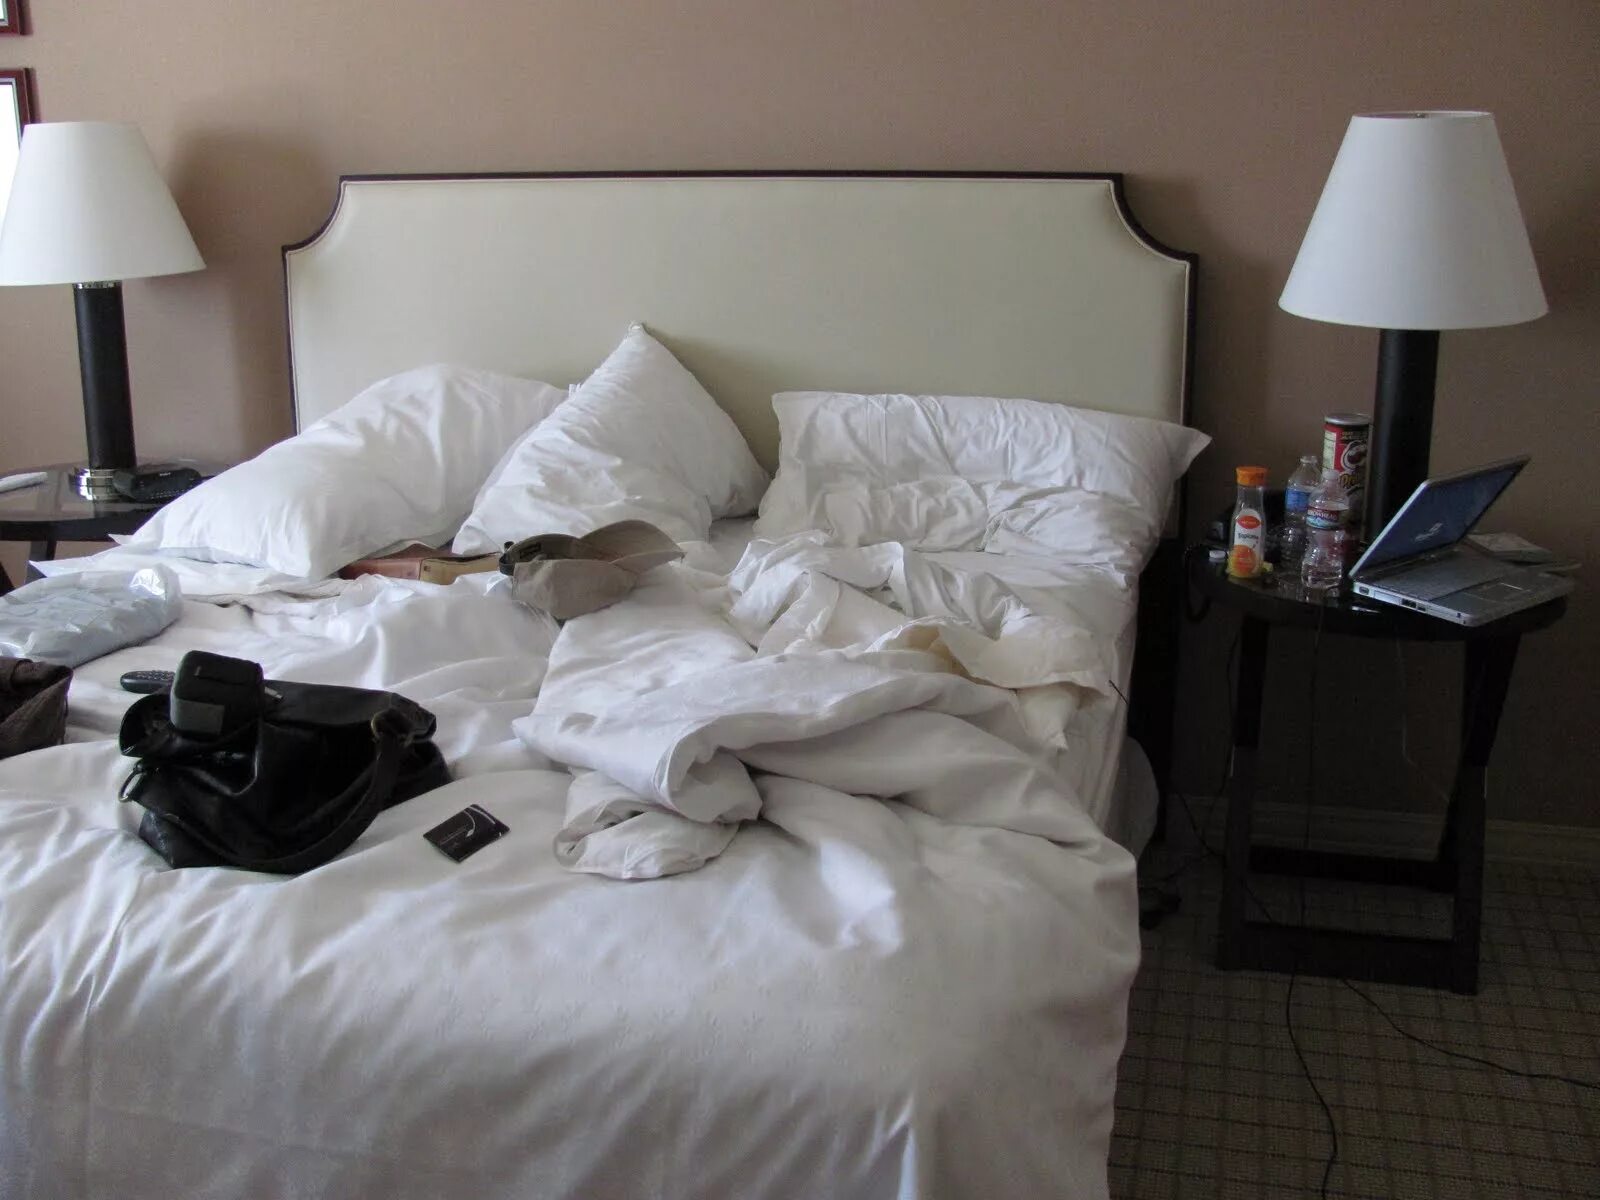 Незаправленная кровать. Незаправленная кровать в отеле. Смятая постель в гостинице. Заправленная постель в отеле.